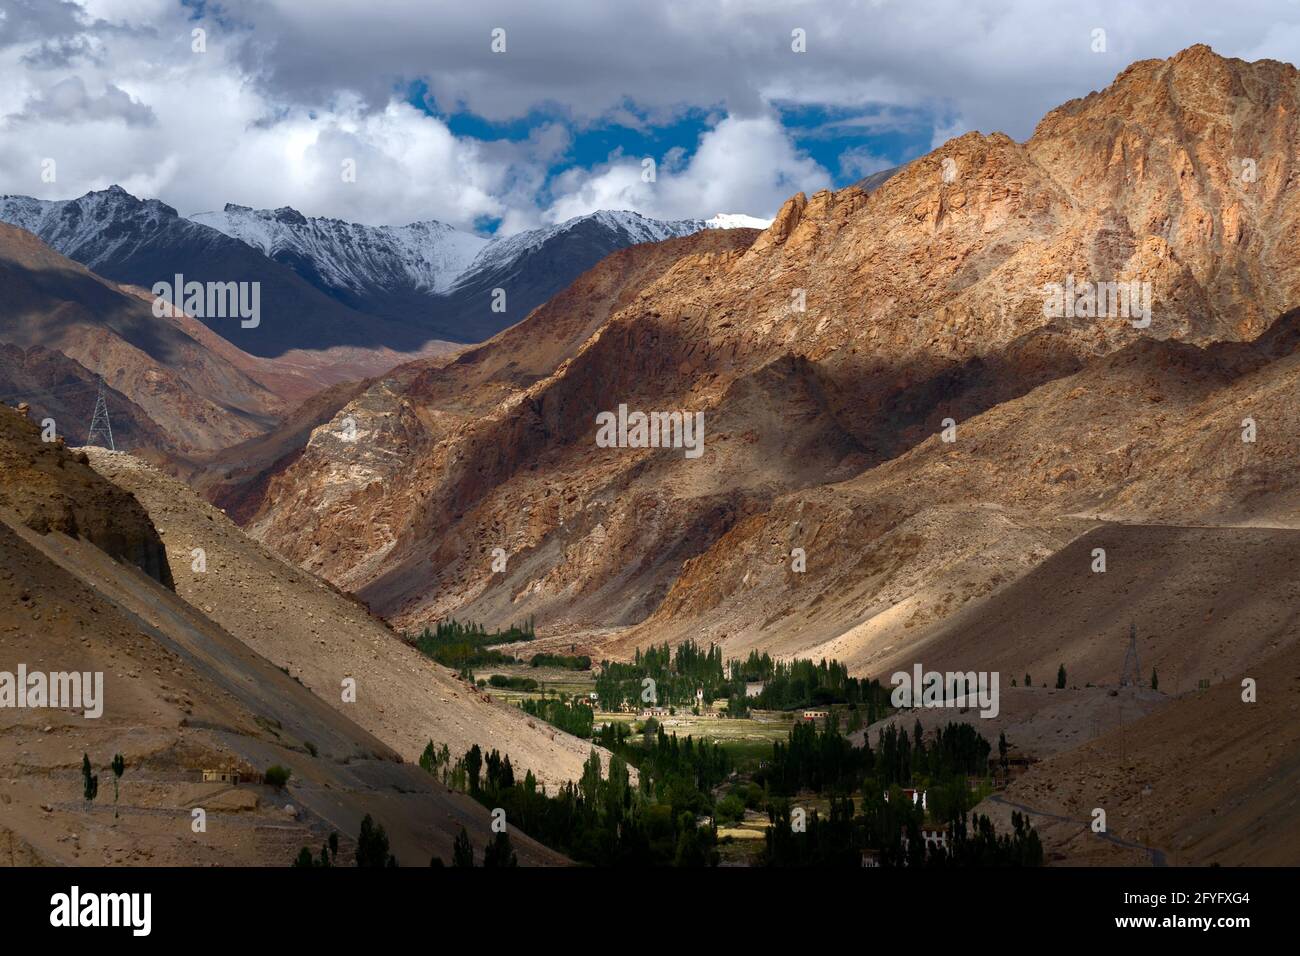 Bellissimo paesaggio roccioso di Ladakh con valle verde nel mezzo, gioco di luce e ombra sulle montagne Himalayane. Territorio dell'Unione, Ladakh, India Foto Stock